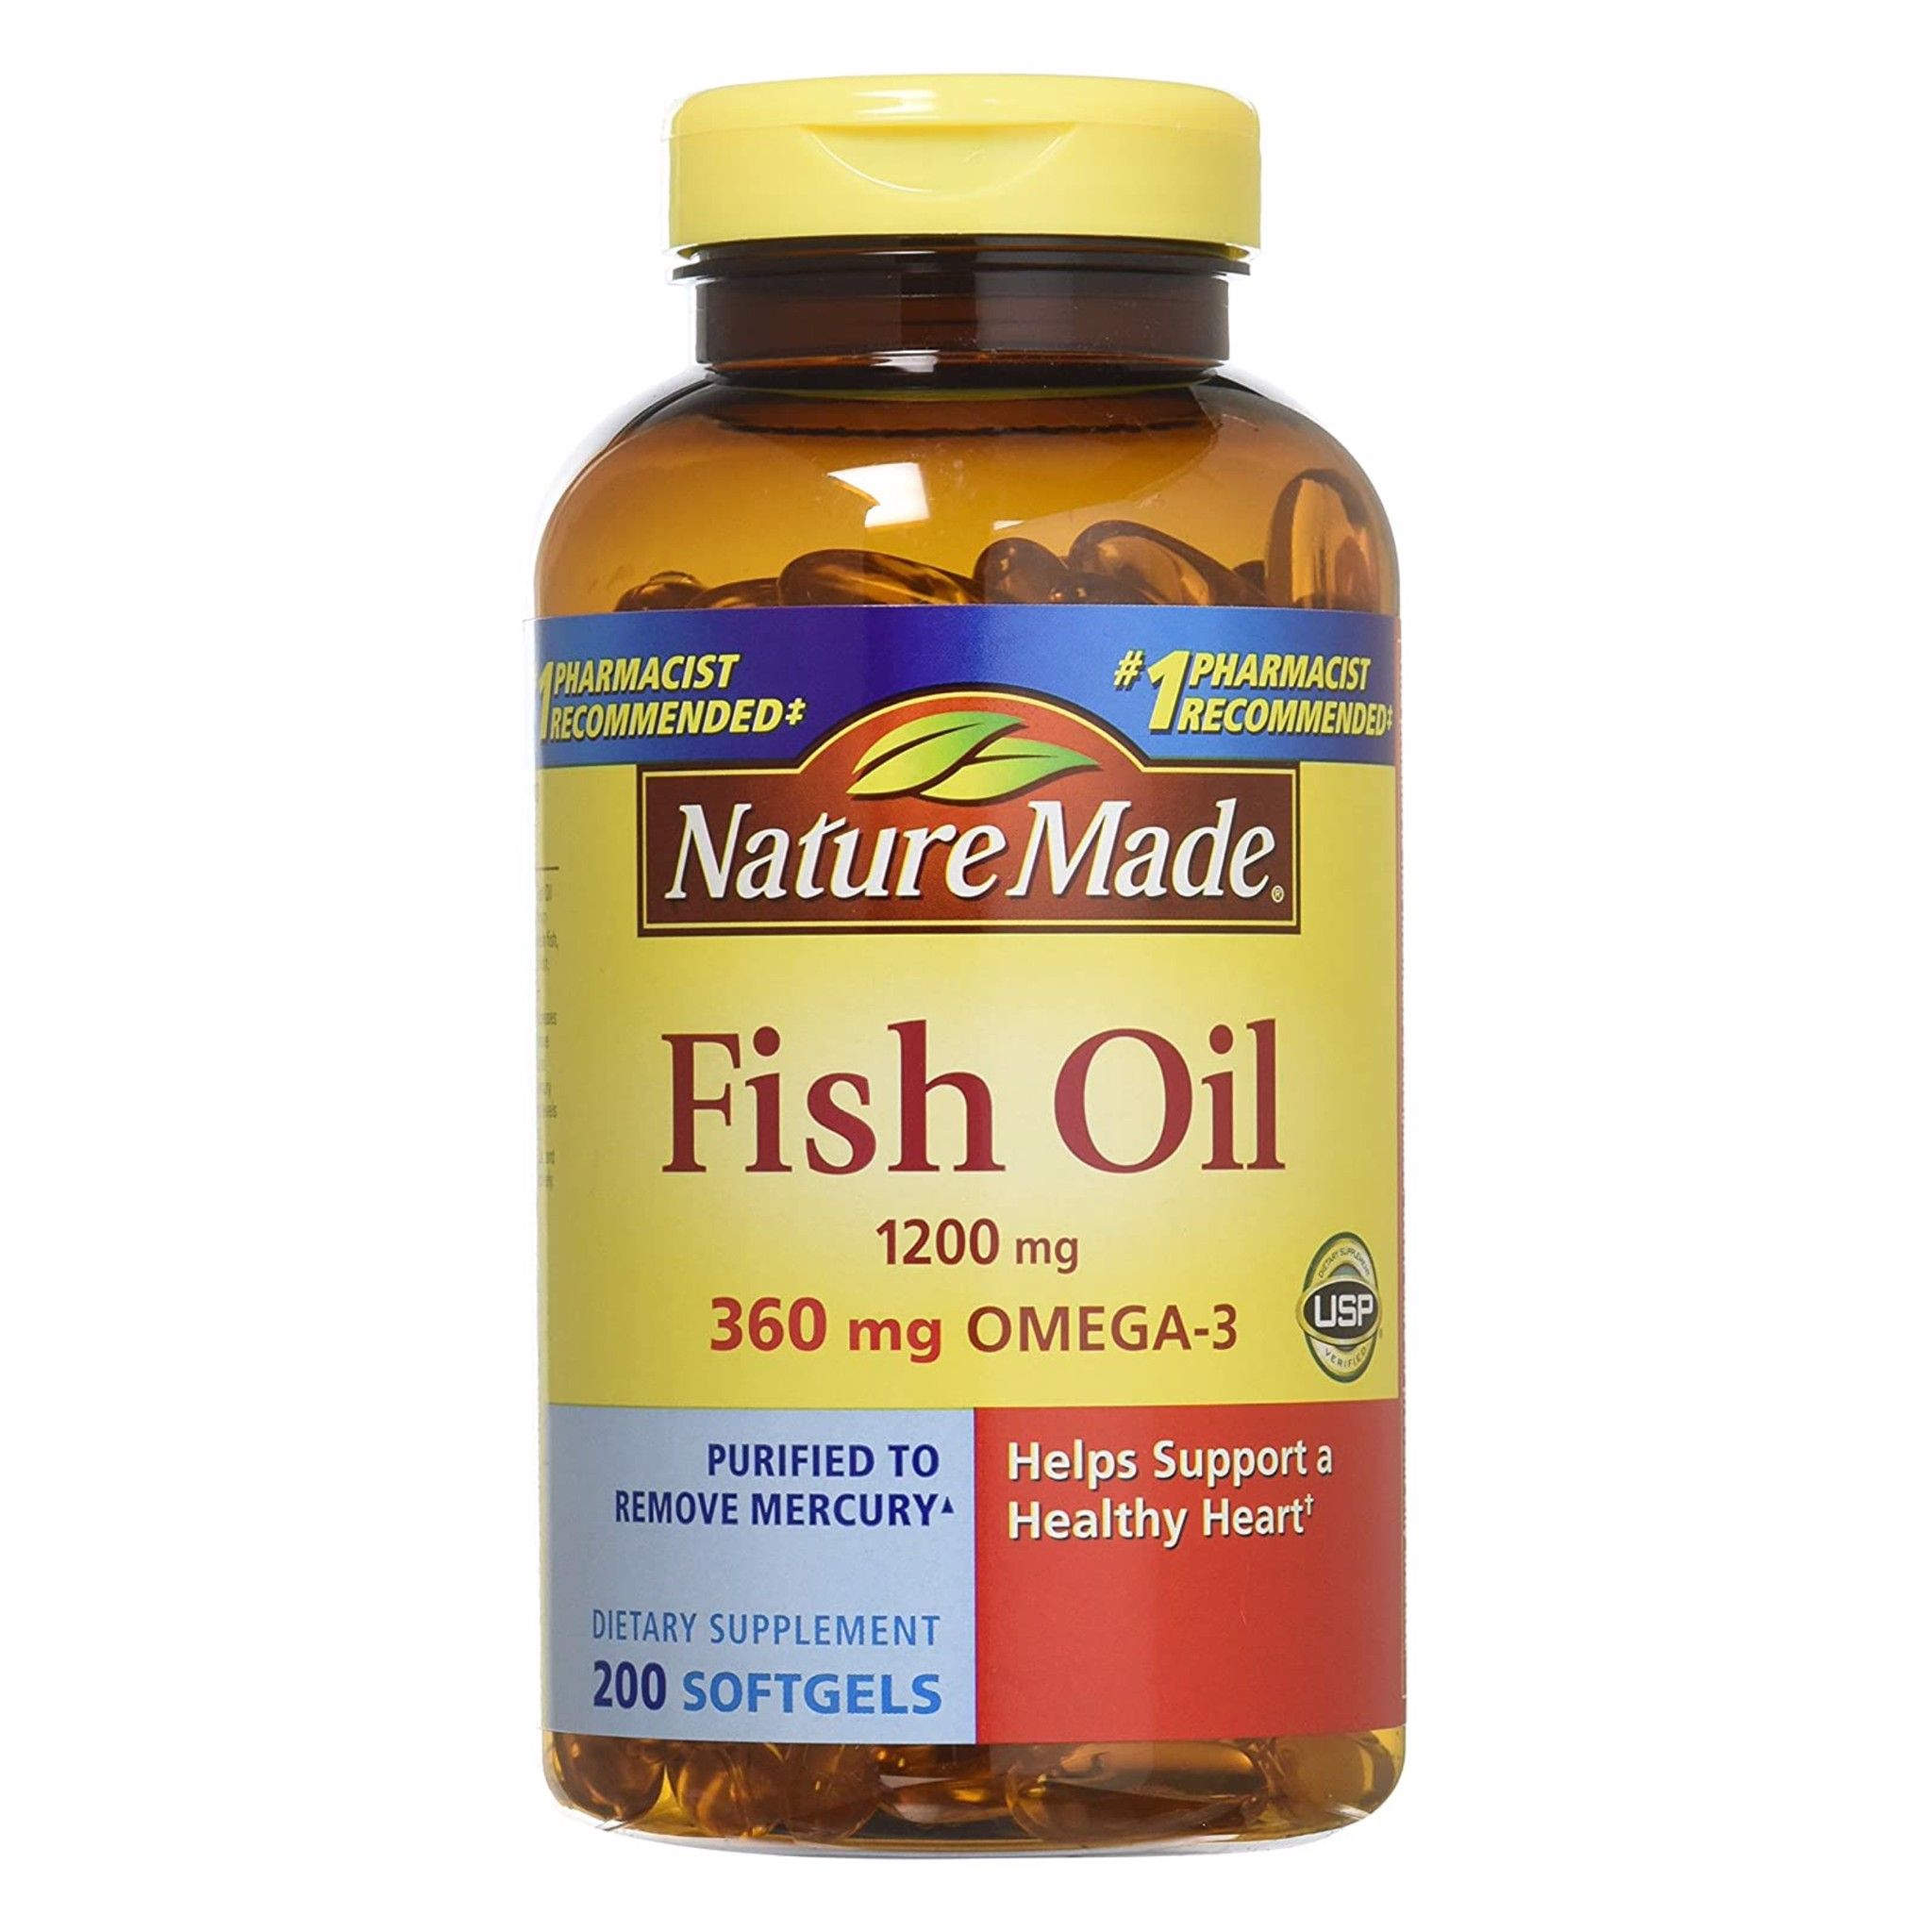  Dầu Cá Nature Made Fish Oil 1200mg 0mega-3 [Hộp200 viên]. Mẫu hộp 2020 NEW 